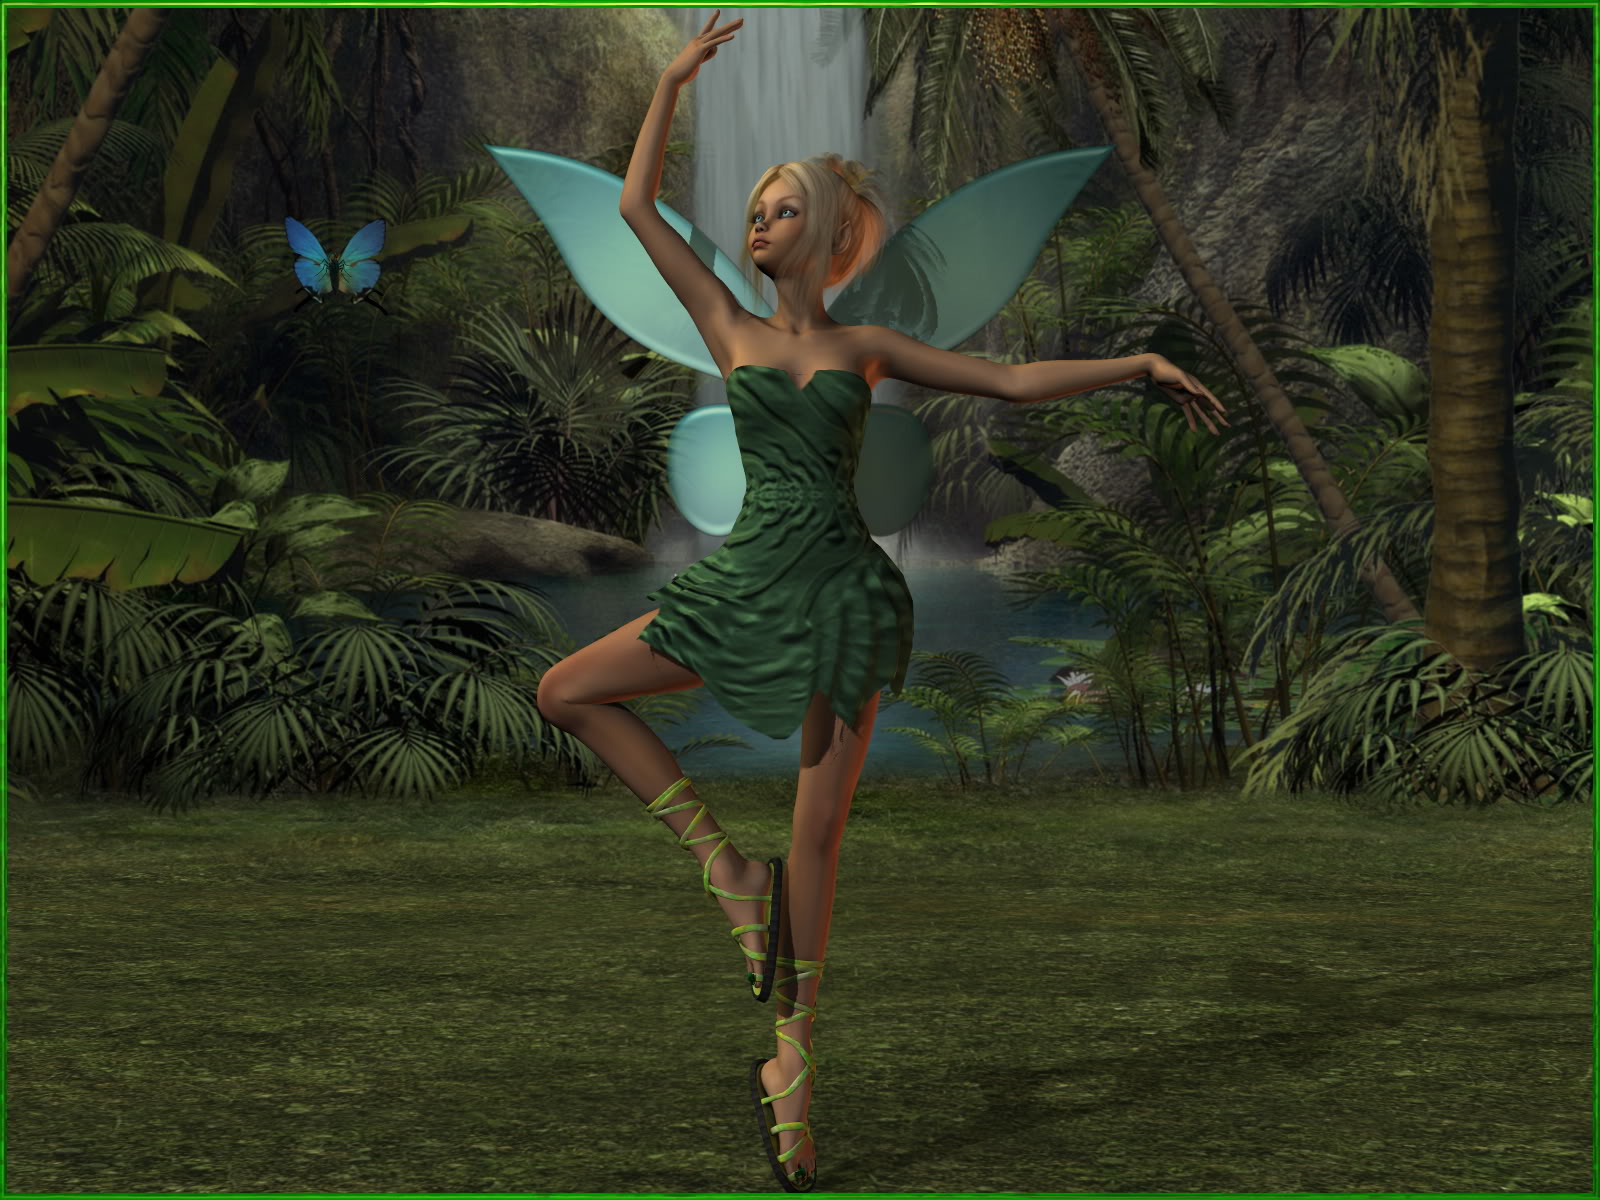 Tinkerbell And A Butterfly Dance A Duet - 1600x1200 Pixel ...